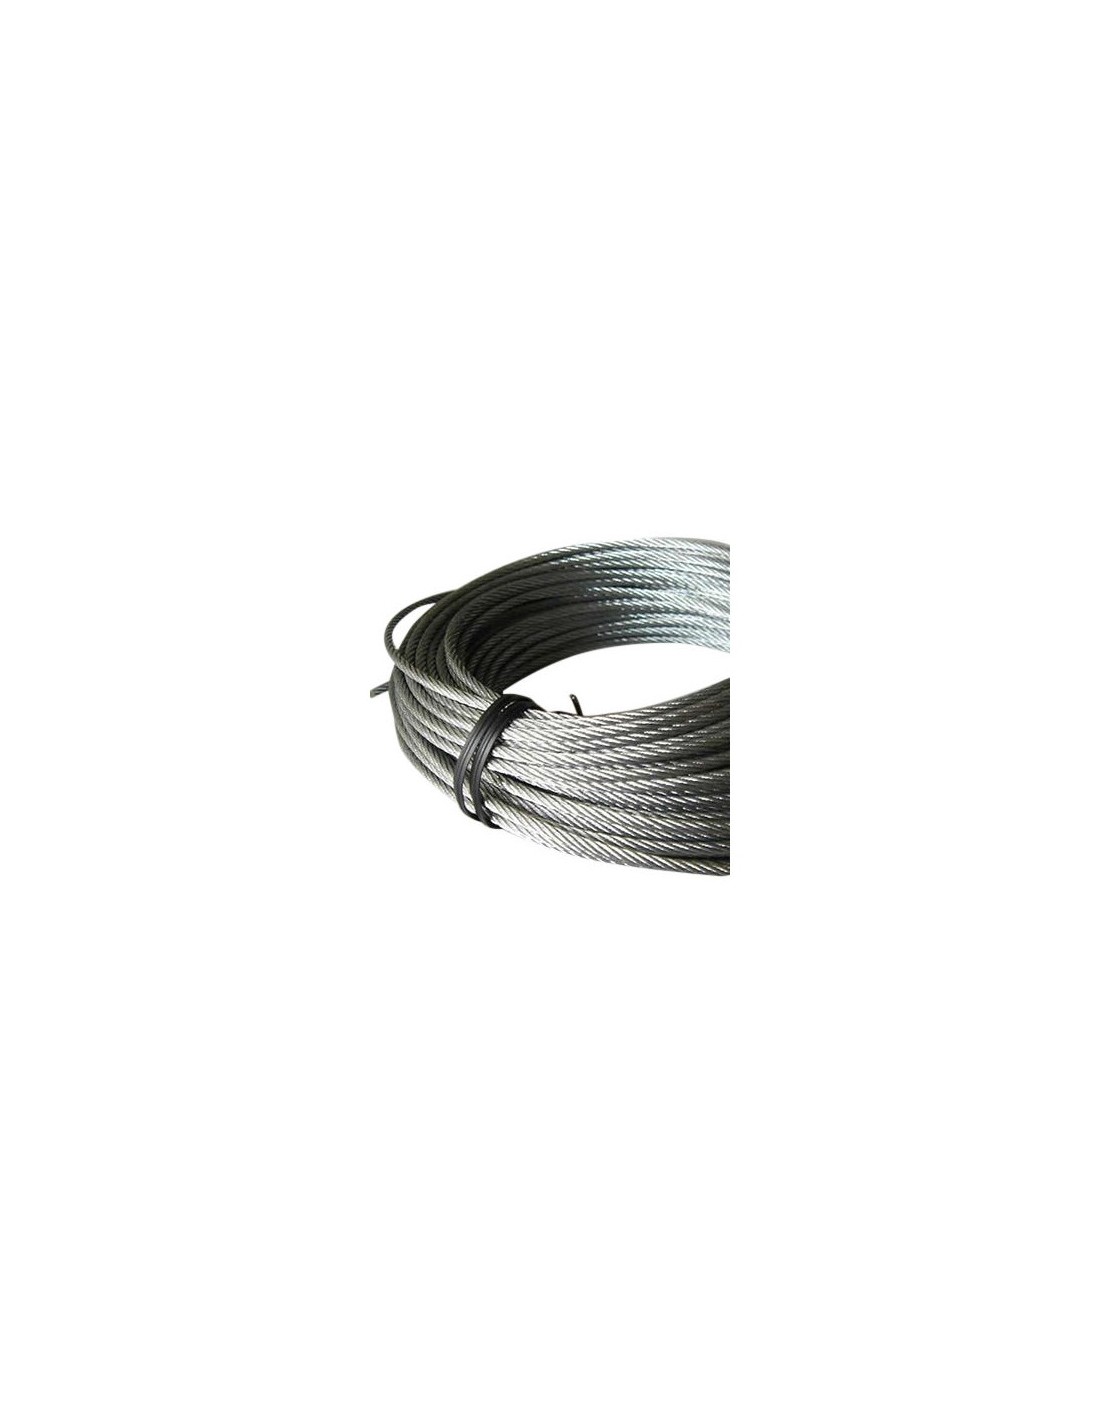 Cable Acero Inox Aisi 316 Cd 047x190 De Cables Y Eslingas